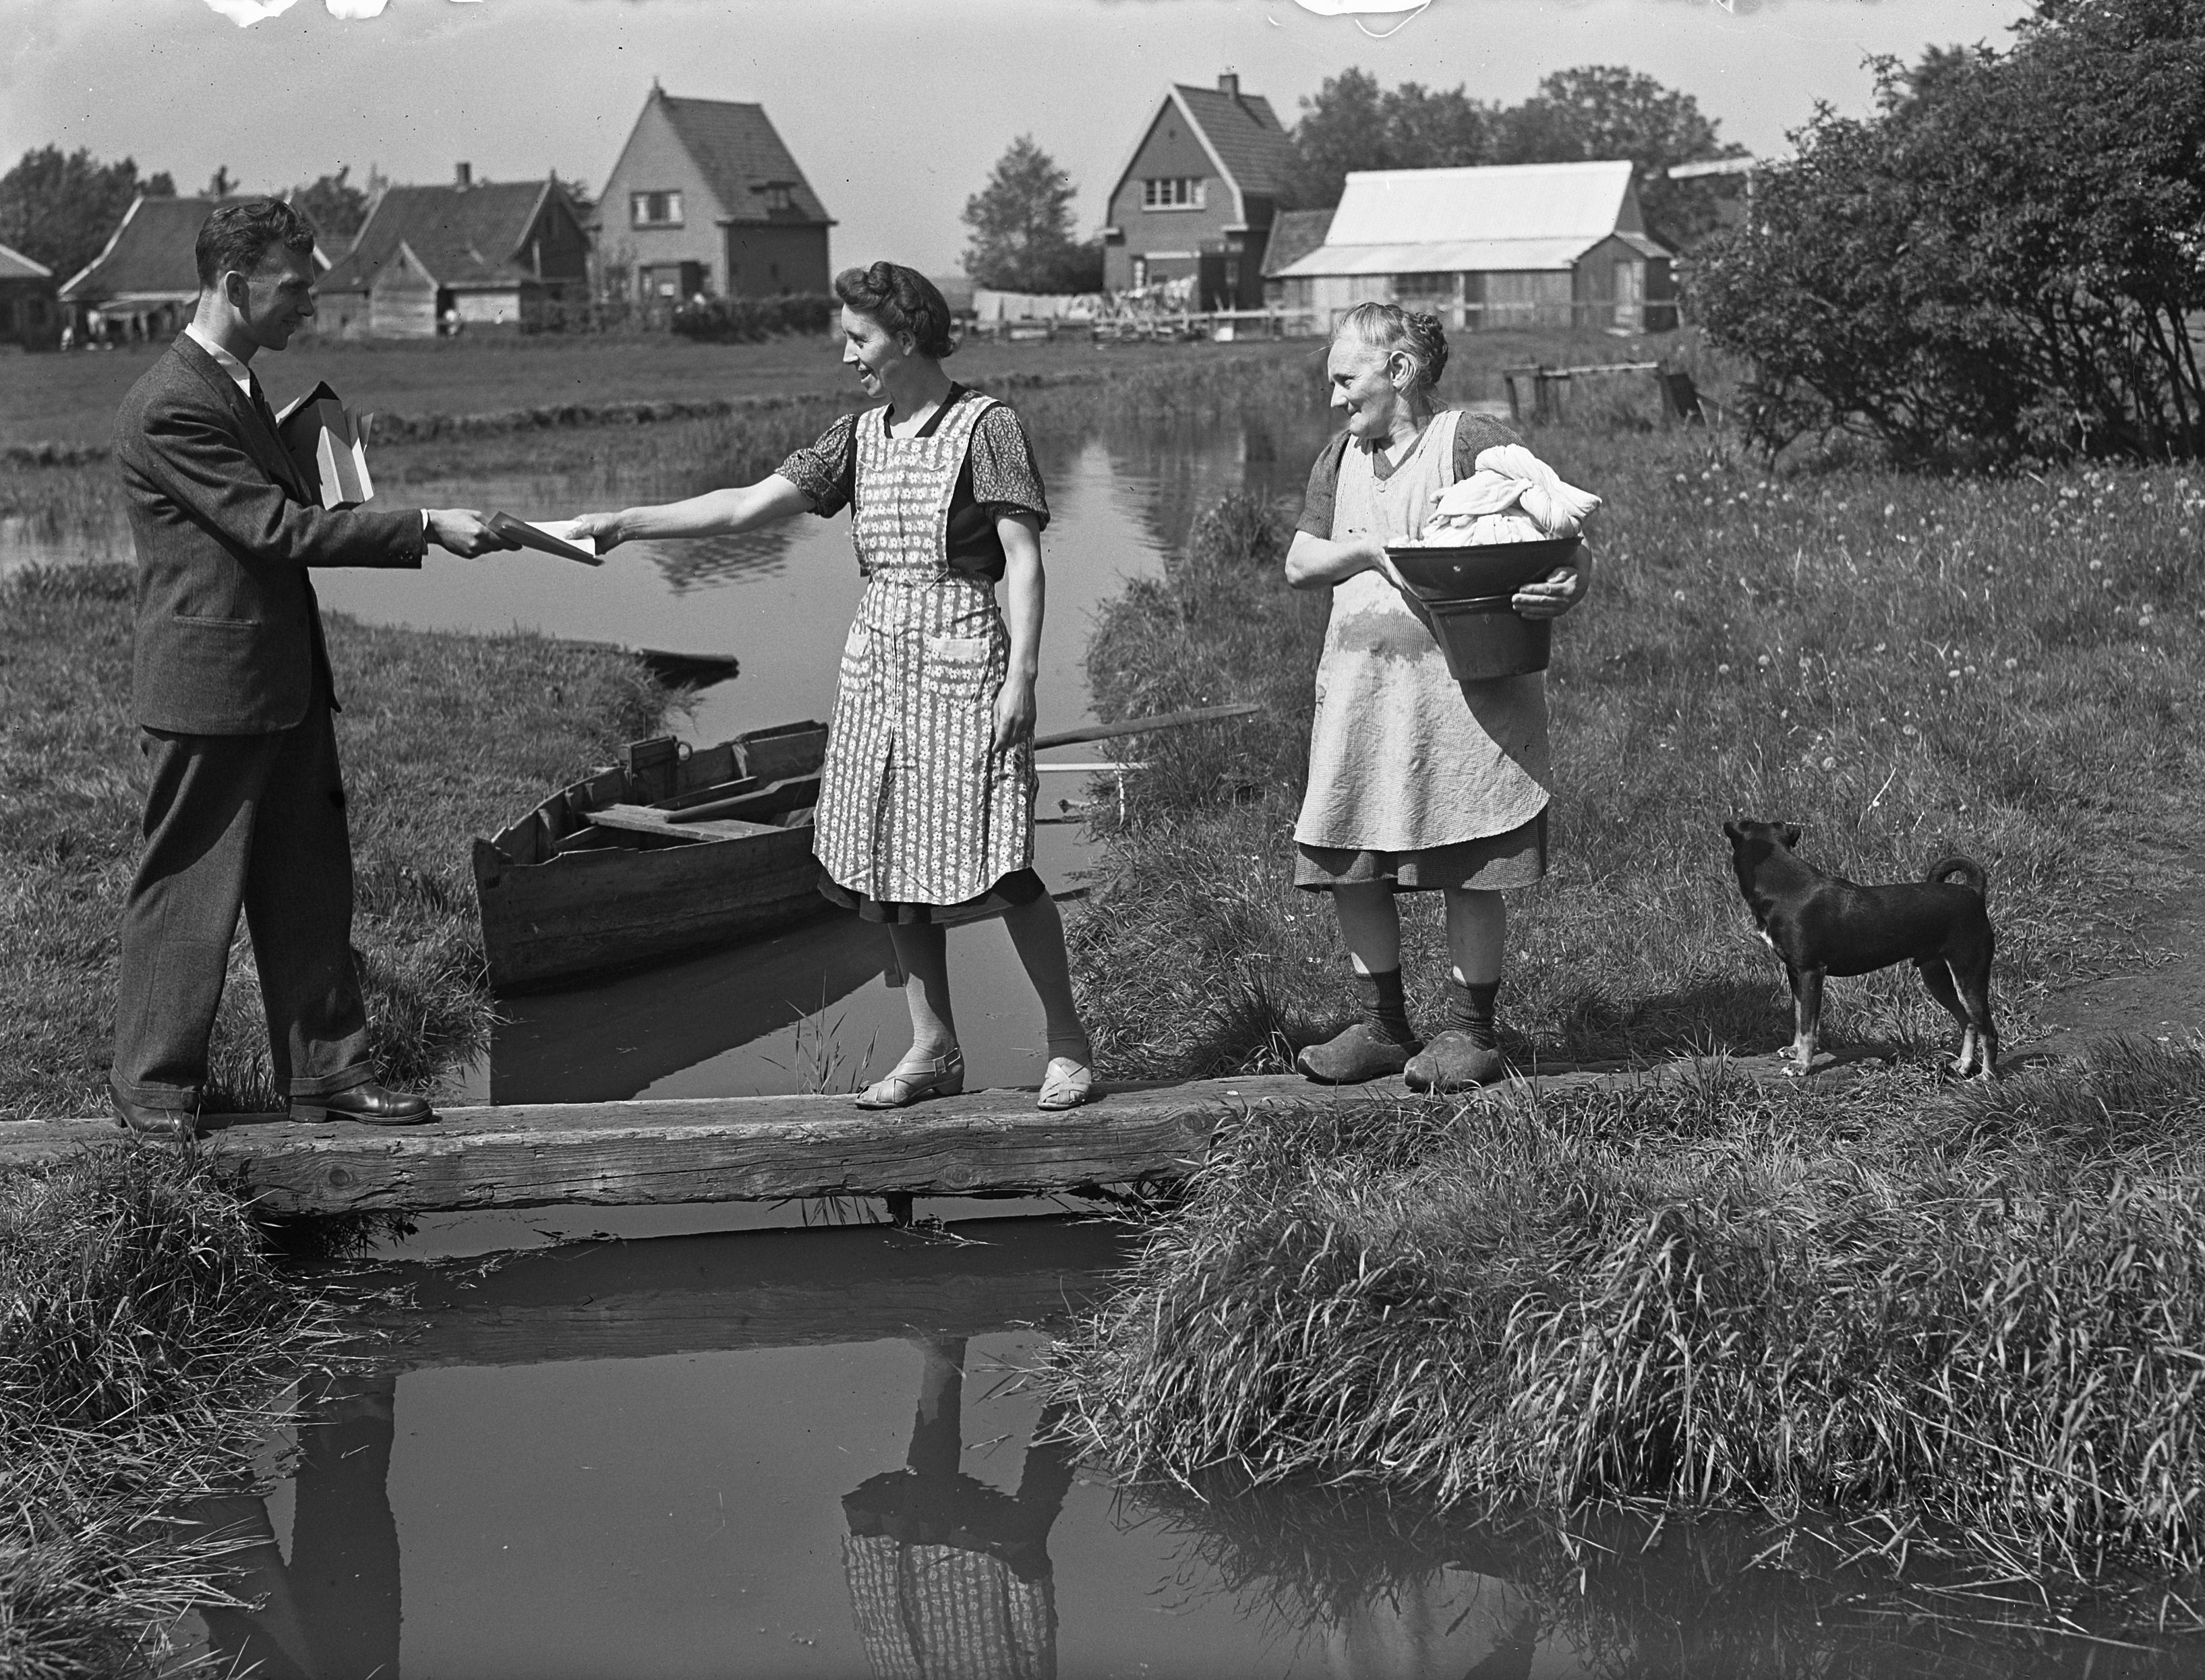 12e volkstelling 1947, CBS-man overhandigt formulier aan boerin in plattelandsomgeving